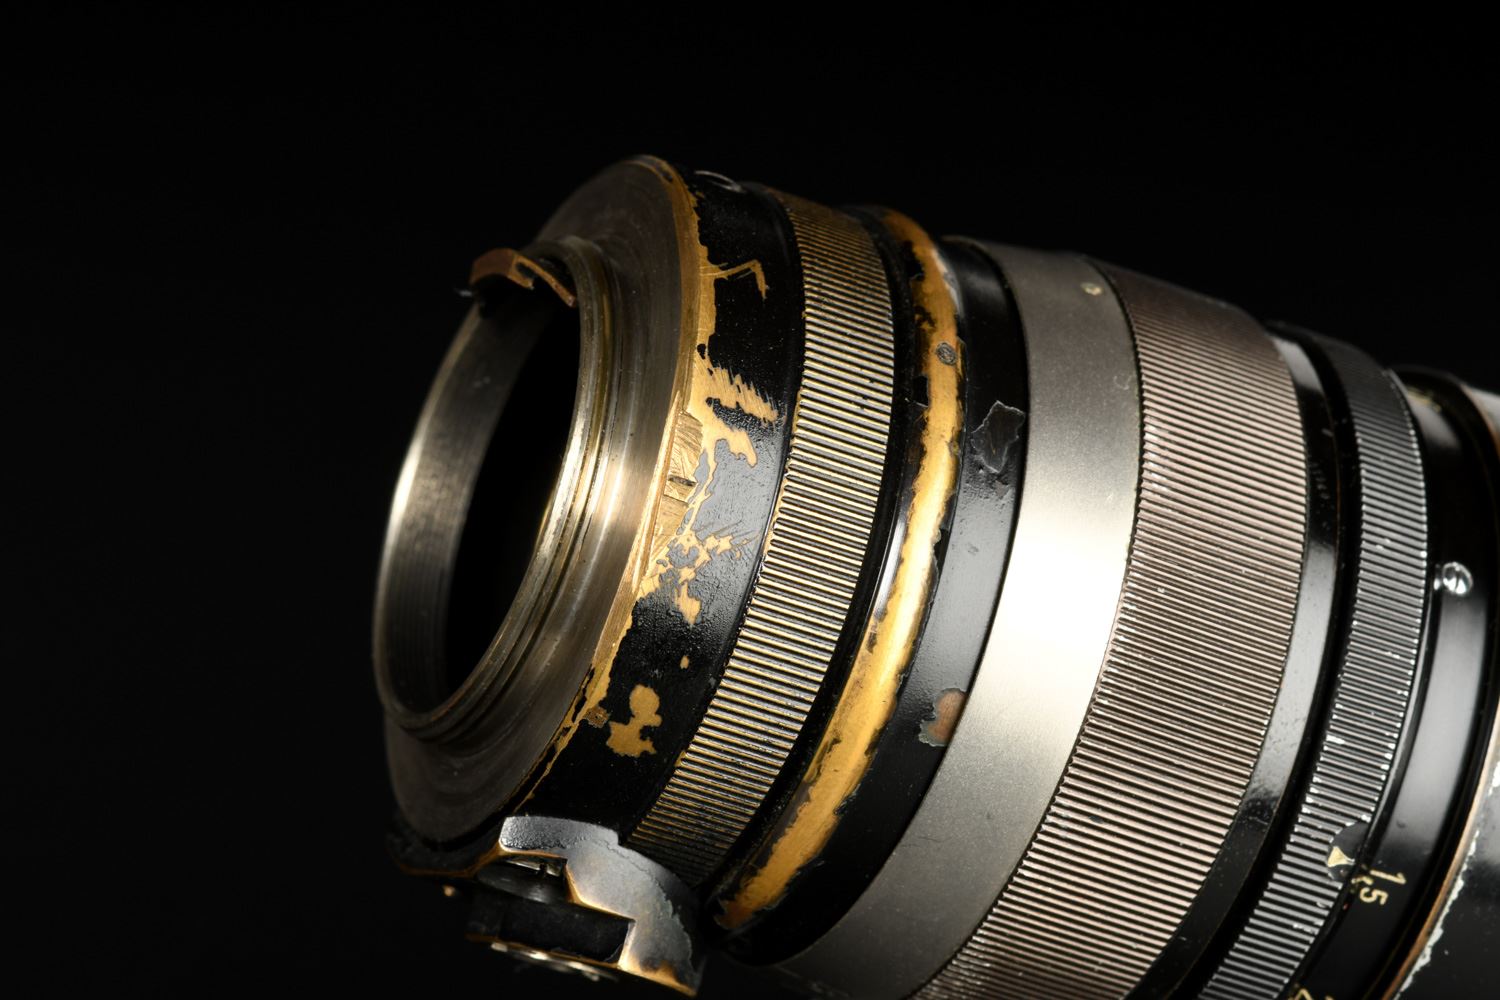 Picture of Leica Summarex 8.5cm f/1.5 Black Paint Screw LTM